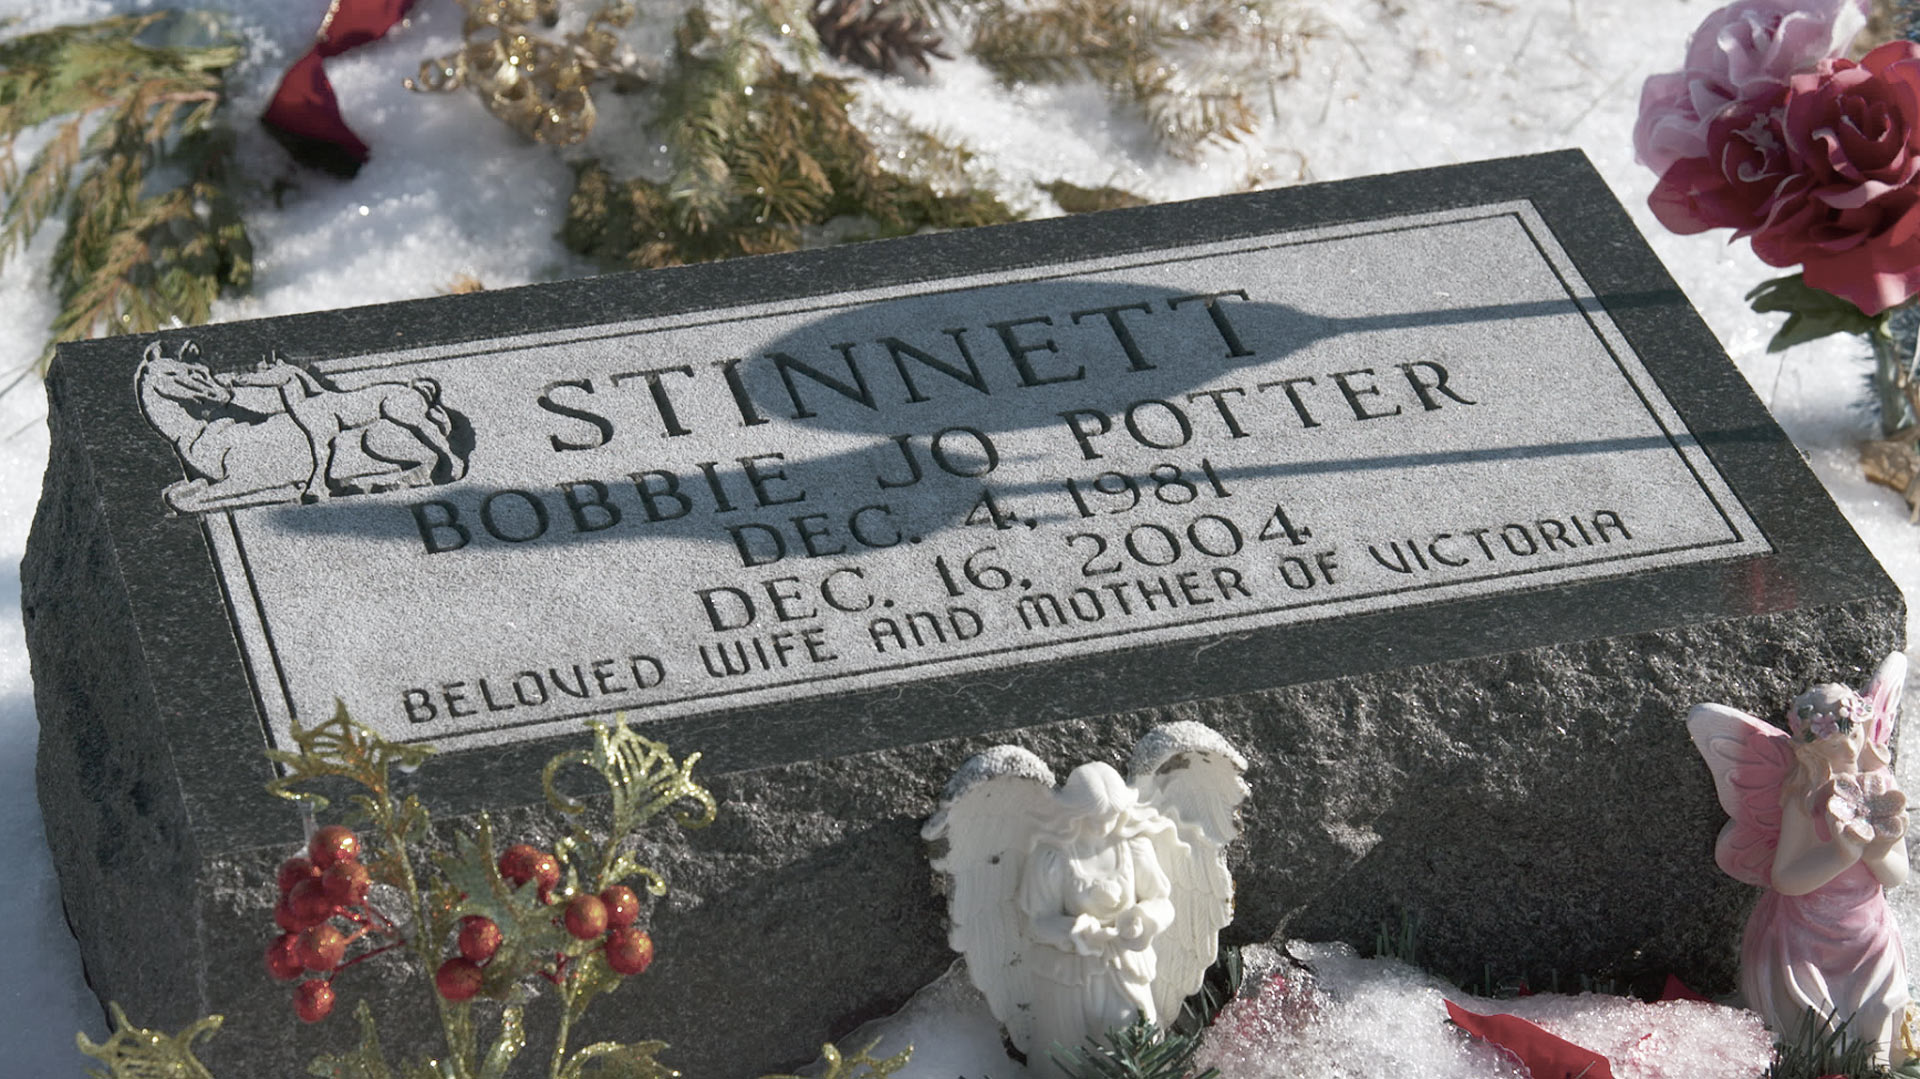 Bobbie Jo Stinnett's grave